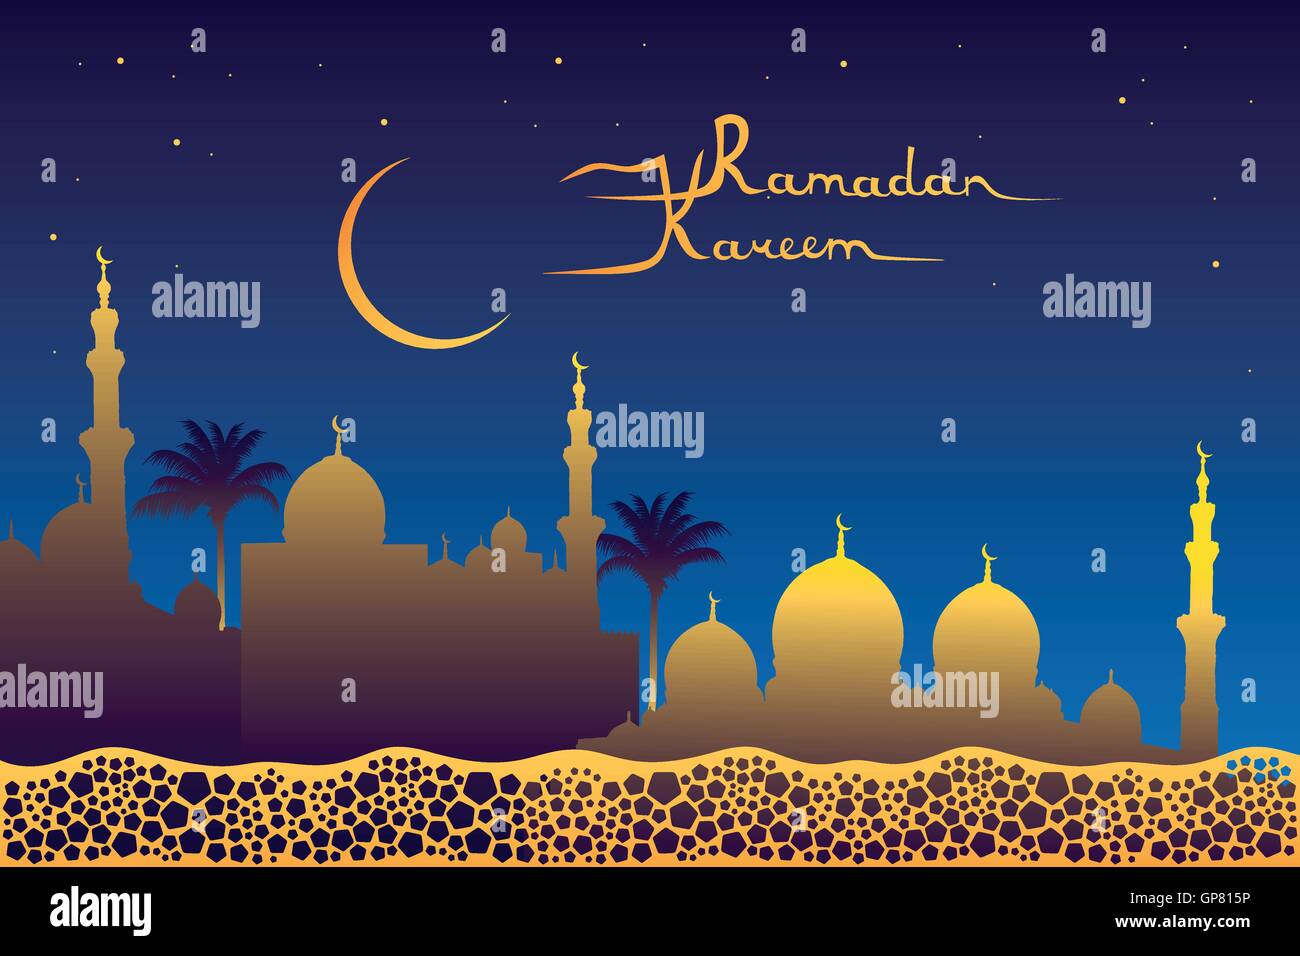 Il Ramadan kareem significato "Il Ramadan è generoso" messaggio, moschea dorata silhouette, luna e stelle del cielo notturno e pentagoni patte Illustrazione Vettoriale